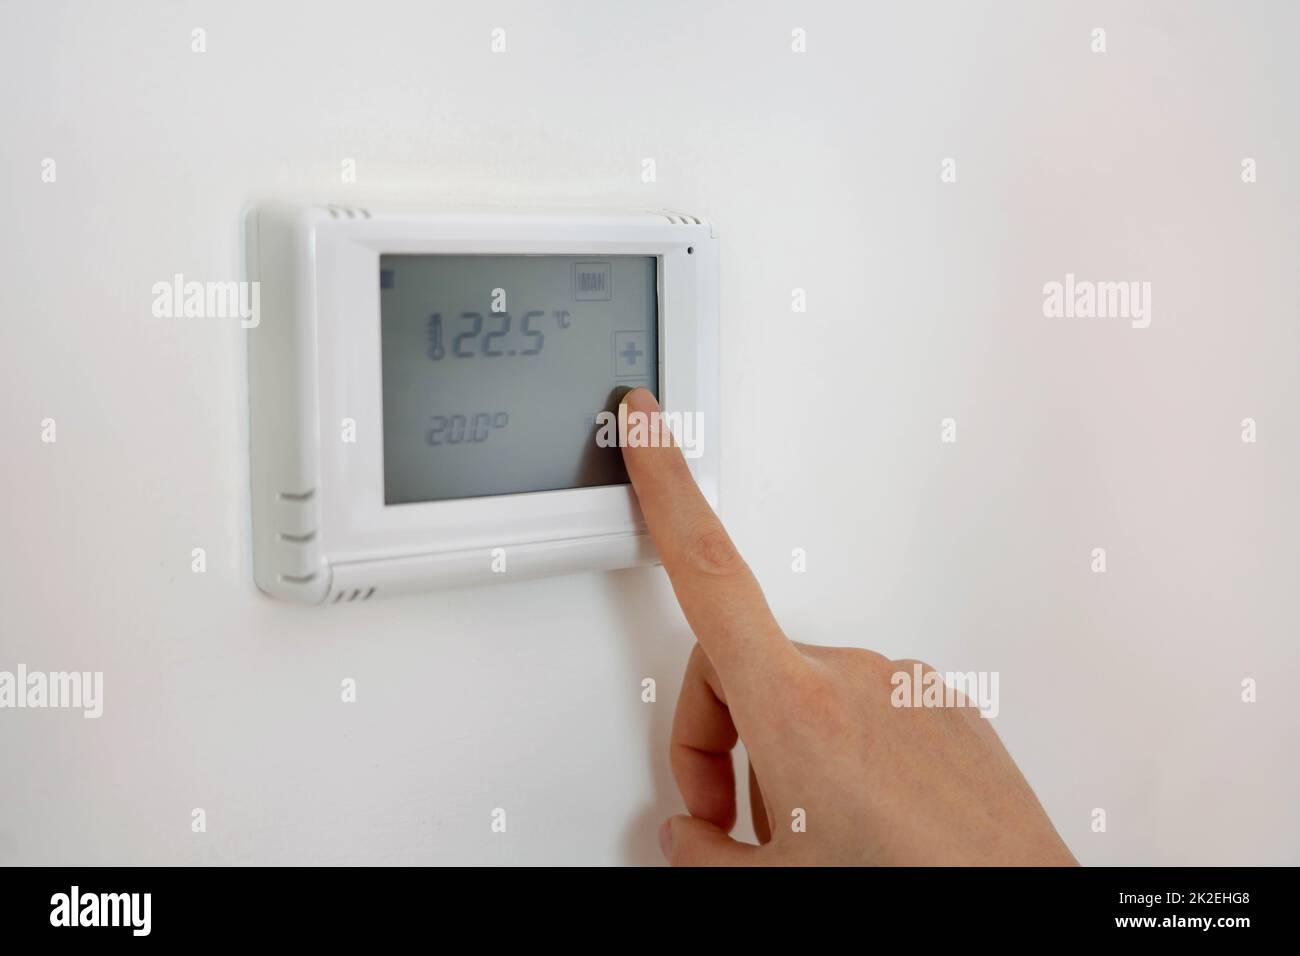 Abaissement de la température pour économiser de l'énergie. Thermostat de chauffage central numérique à réglage manuel chez l'homme. Banque D'Images